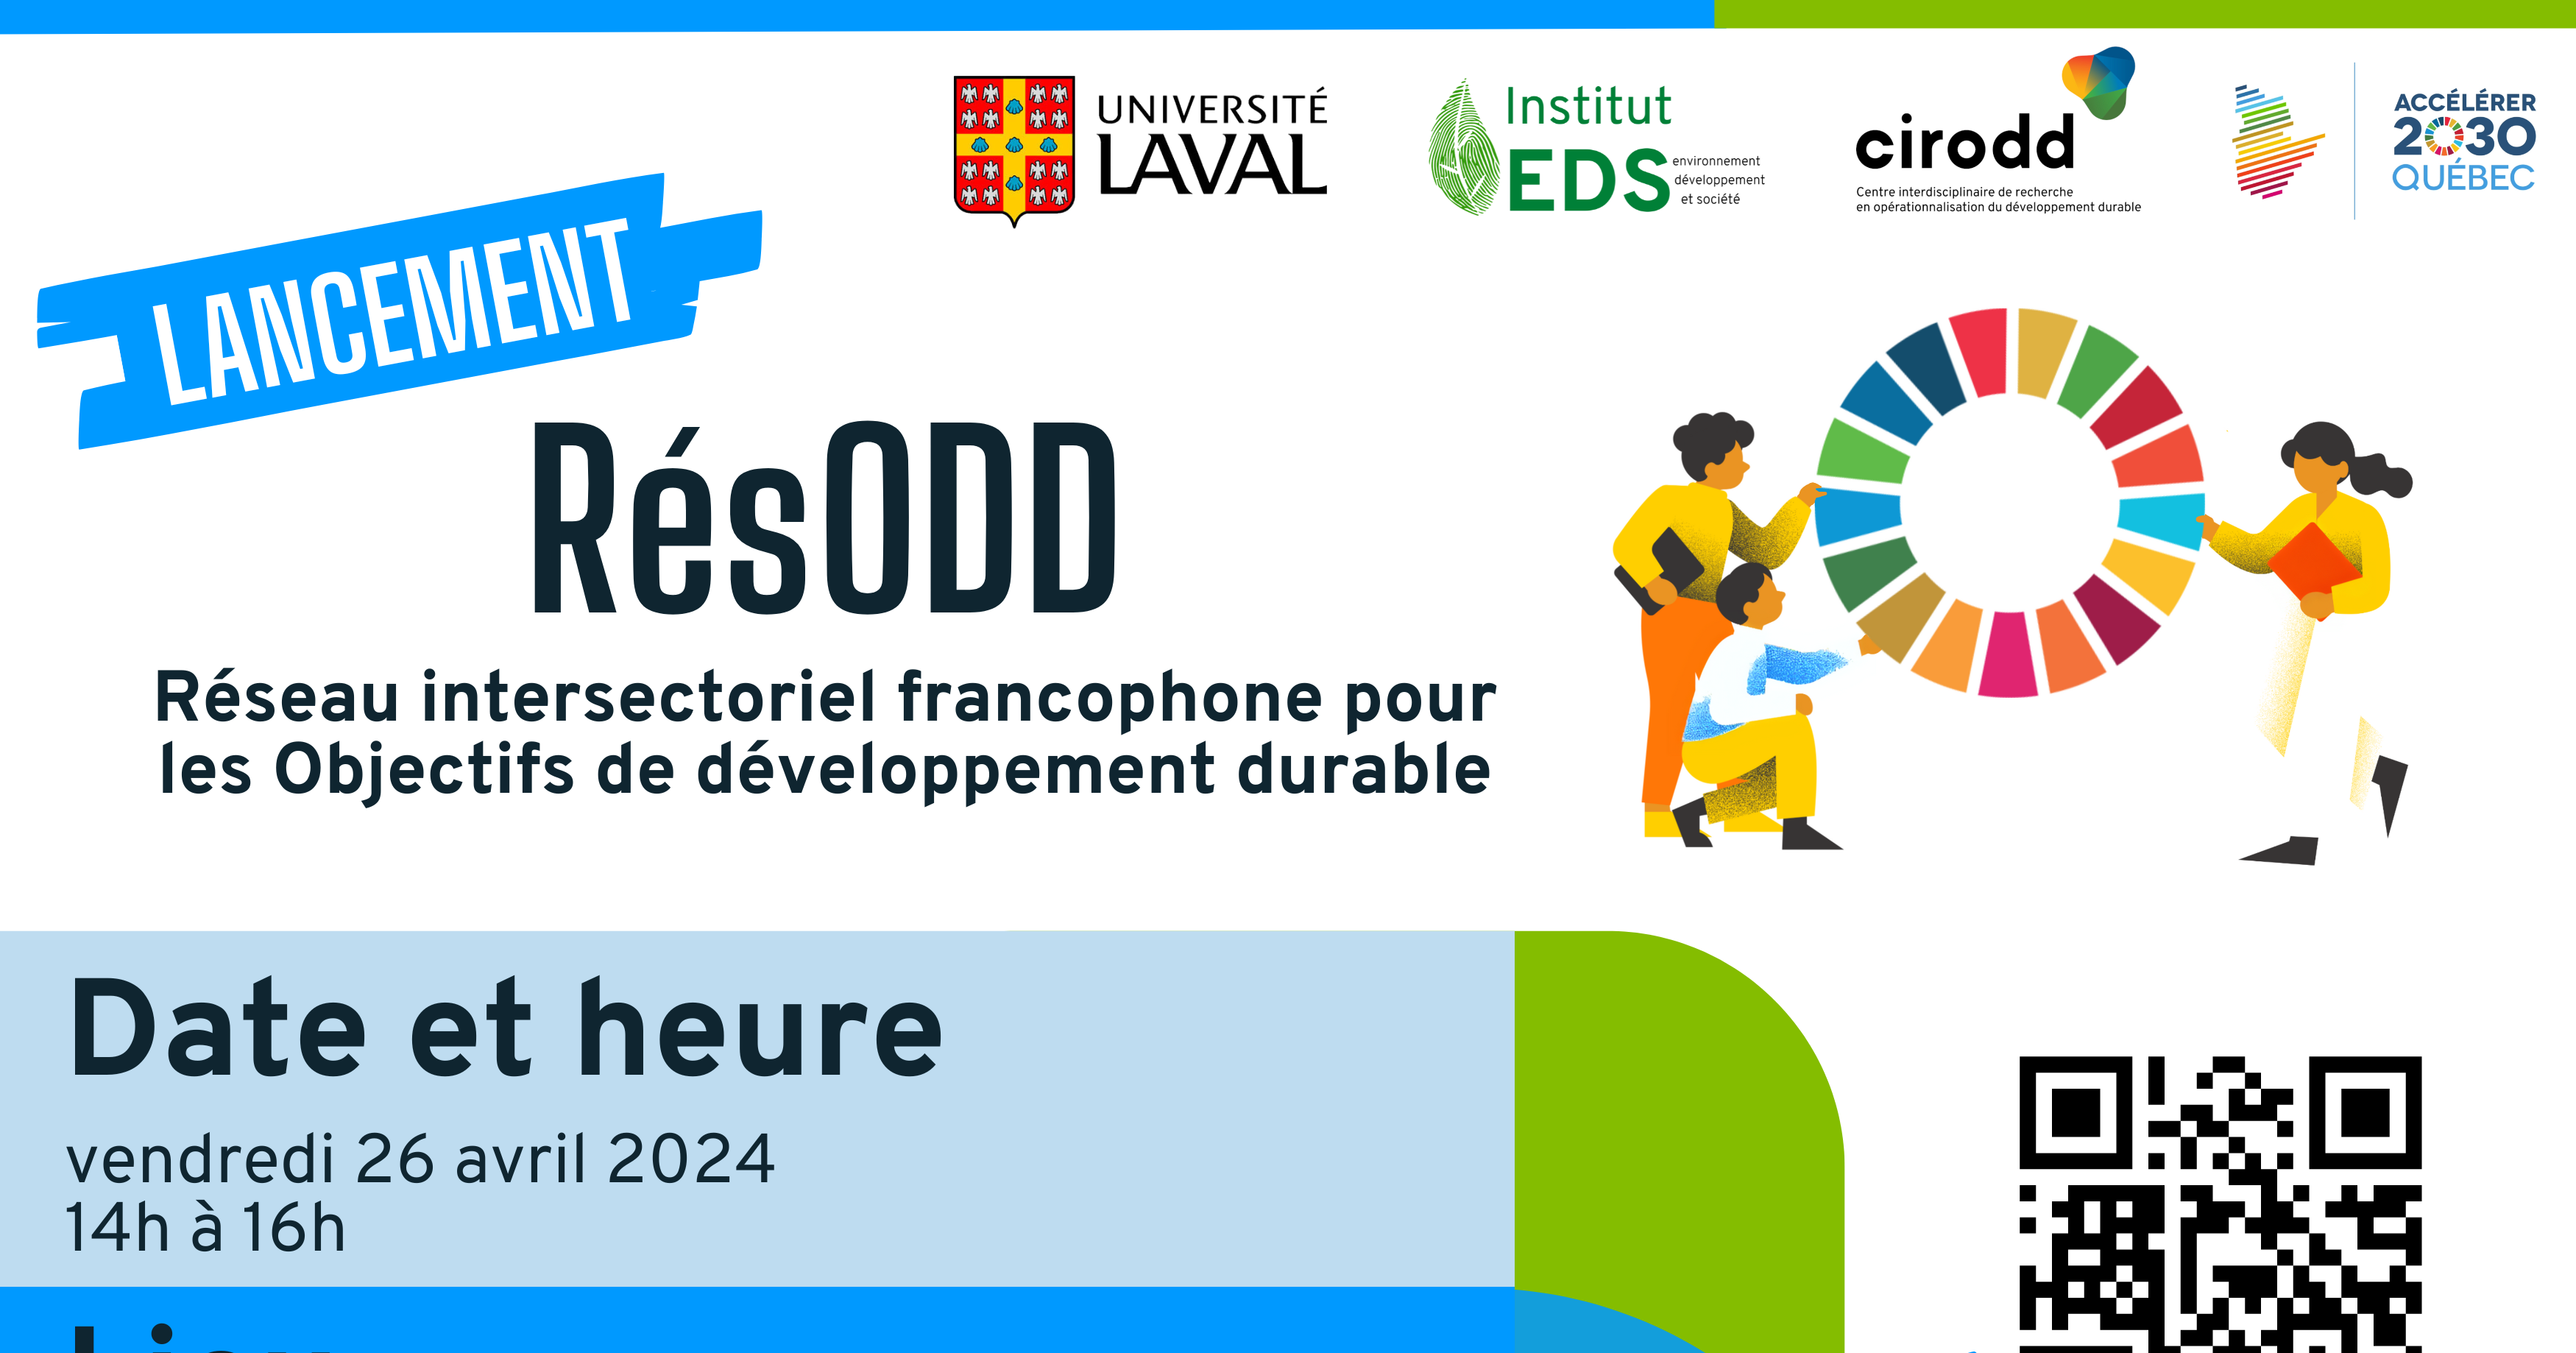 Après plusieurs années de co-construction, le RésODD : Réseau intersectoriel francophone pour les Objectifs de développement durable sera officiellement lancé - et nous aimerions vous y voir !